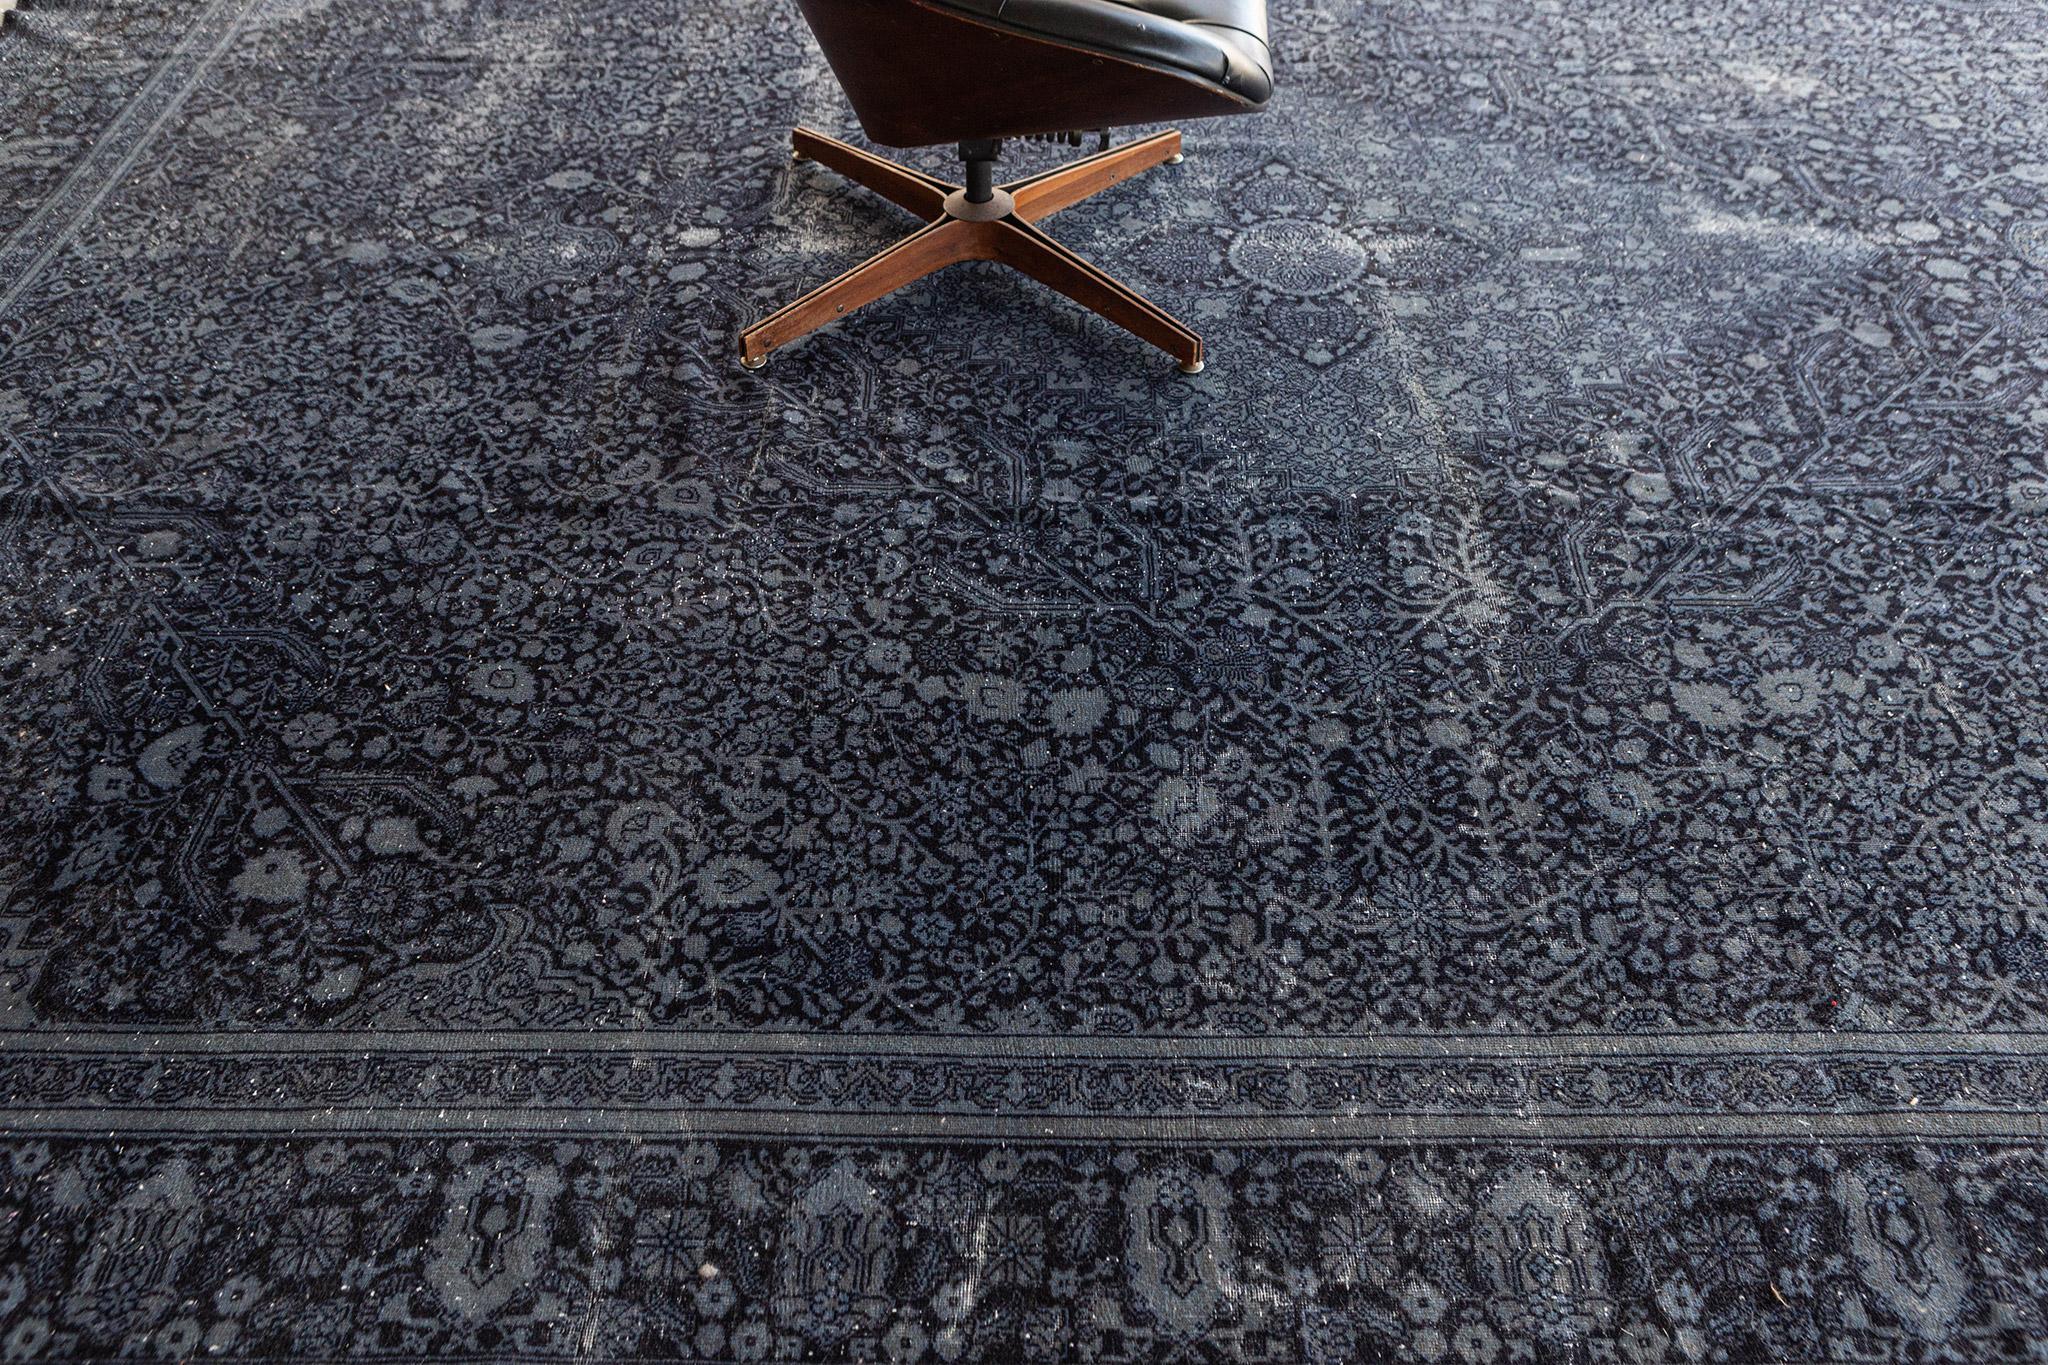 Sivas-Teppiche wie dieser sind hervorragende Dekorationsteppiche für Innenräume, die einen formellen und eleganten Touch erfordern. Dieser Teppich enthält ein Rautenmedaillon mit floralen und rankenartigen Mustern, die sehr kompliziert und